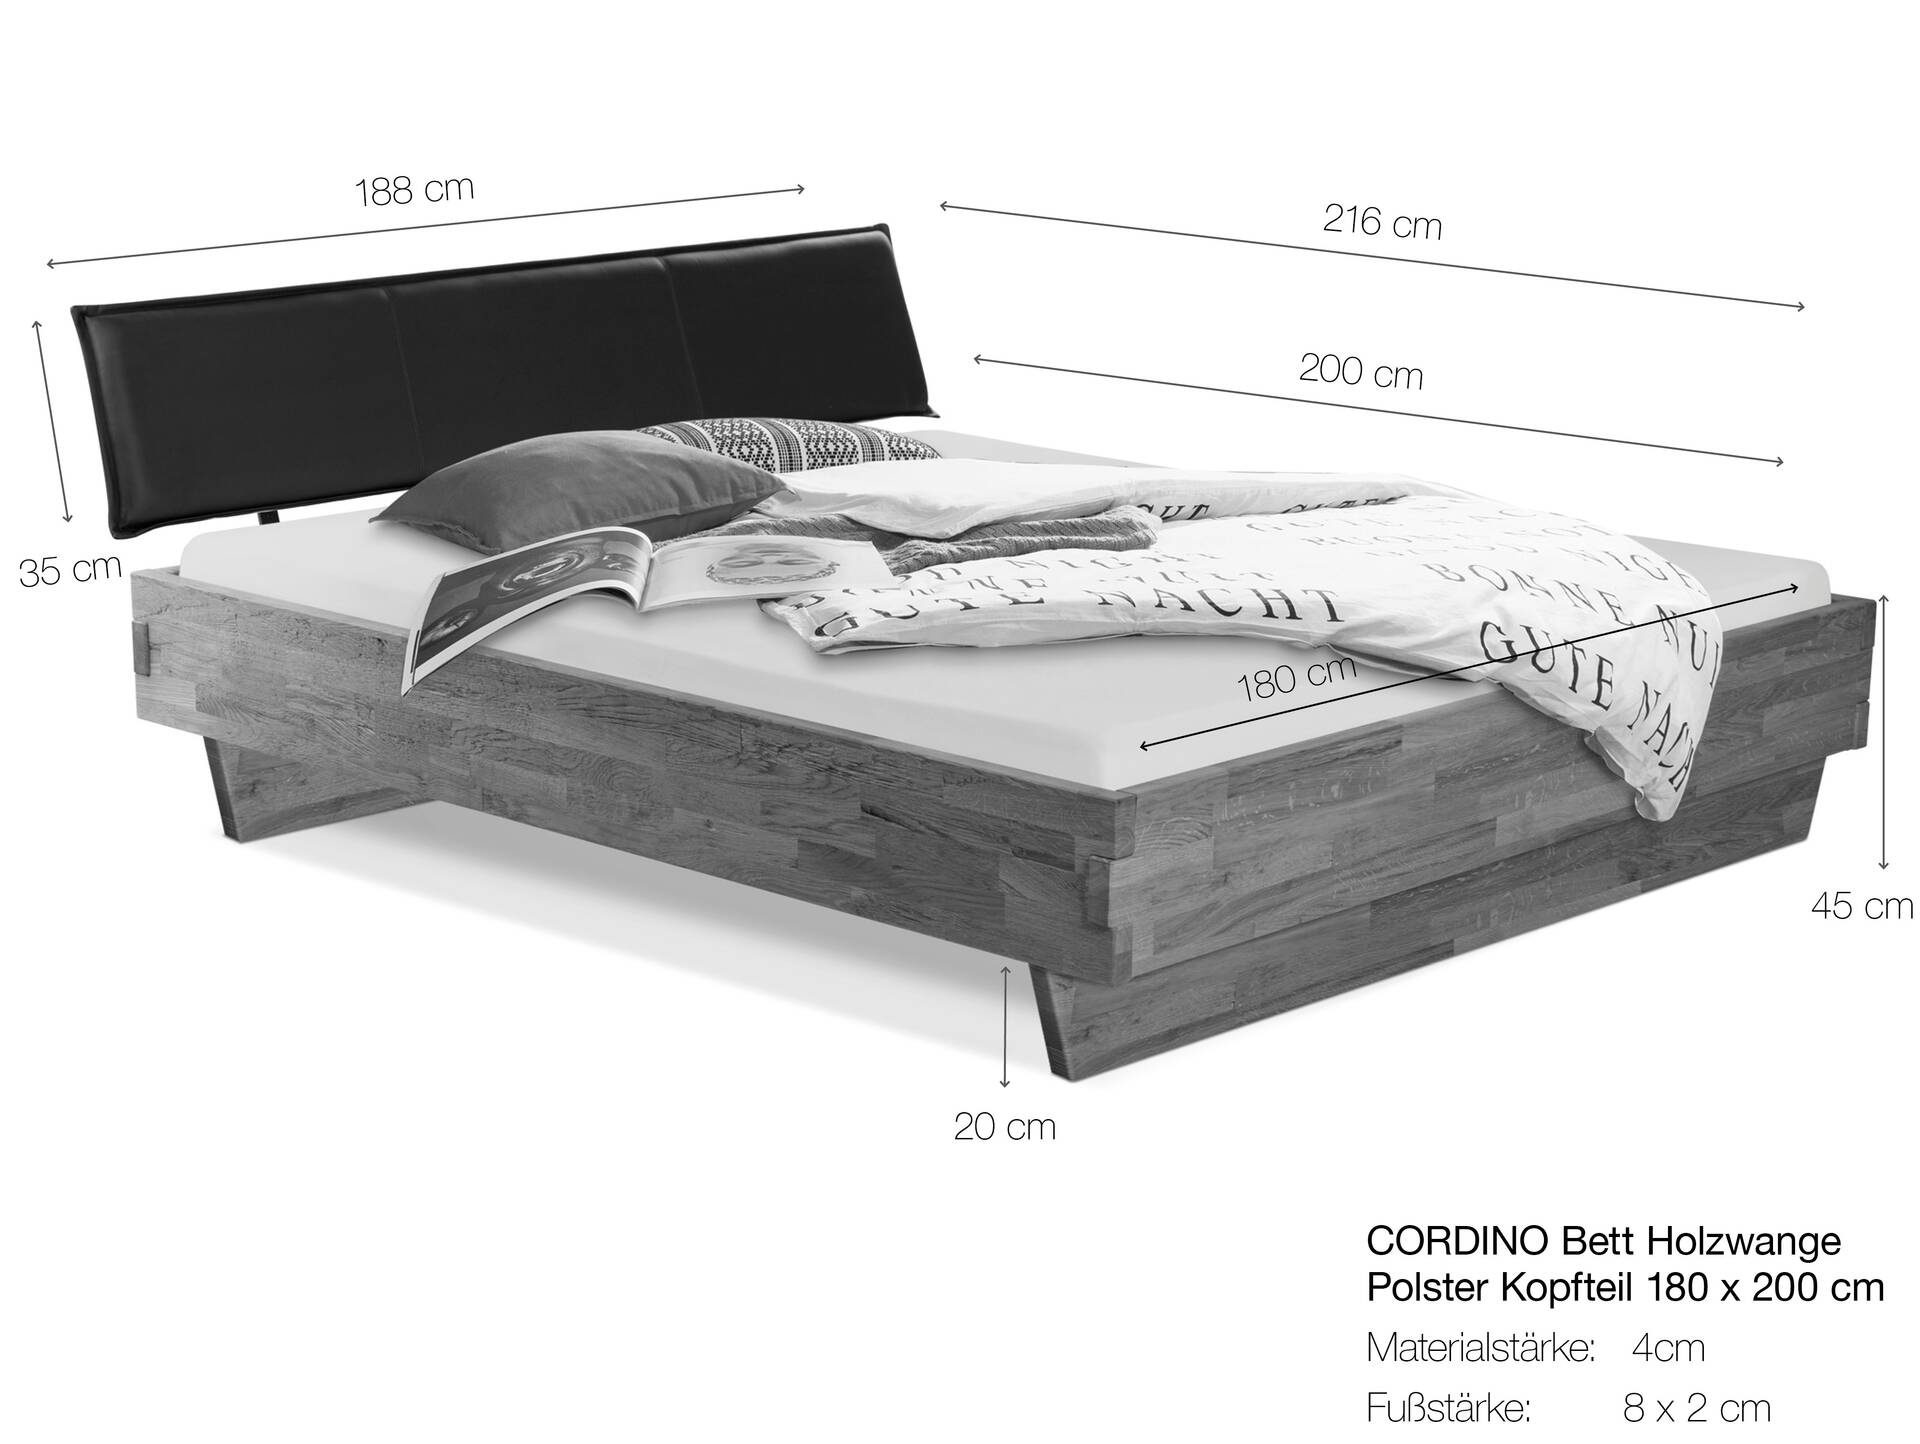 CORDINO Wangenbett aus Eiche mit Polster-Kopfteil, Material Massivholz 180 x 200 cm | Eiche unbehandelt | Kunstleder Braun | gebürstet